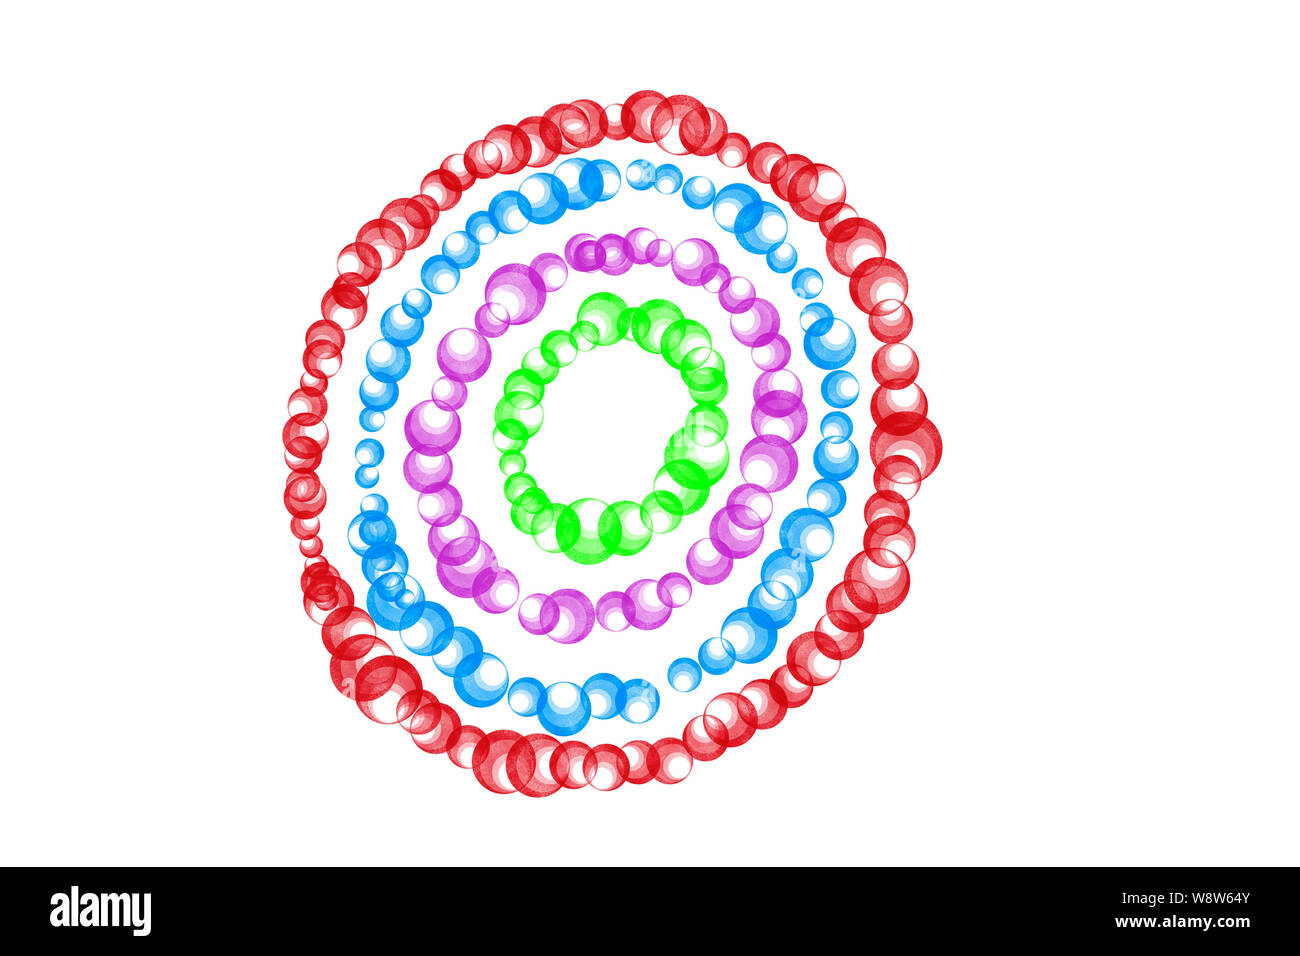 Des cercles concentriques de bulles dans diverses couleurs Banque D'Images